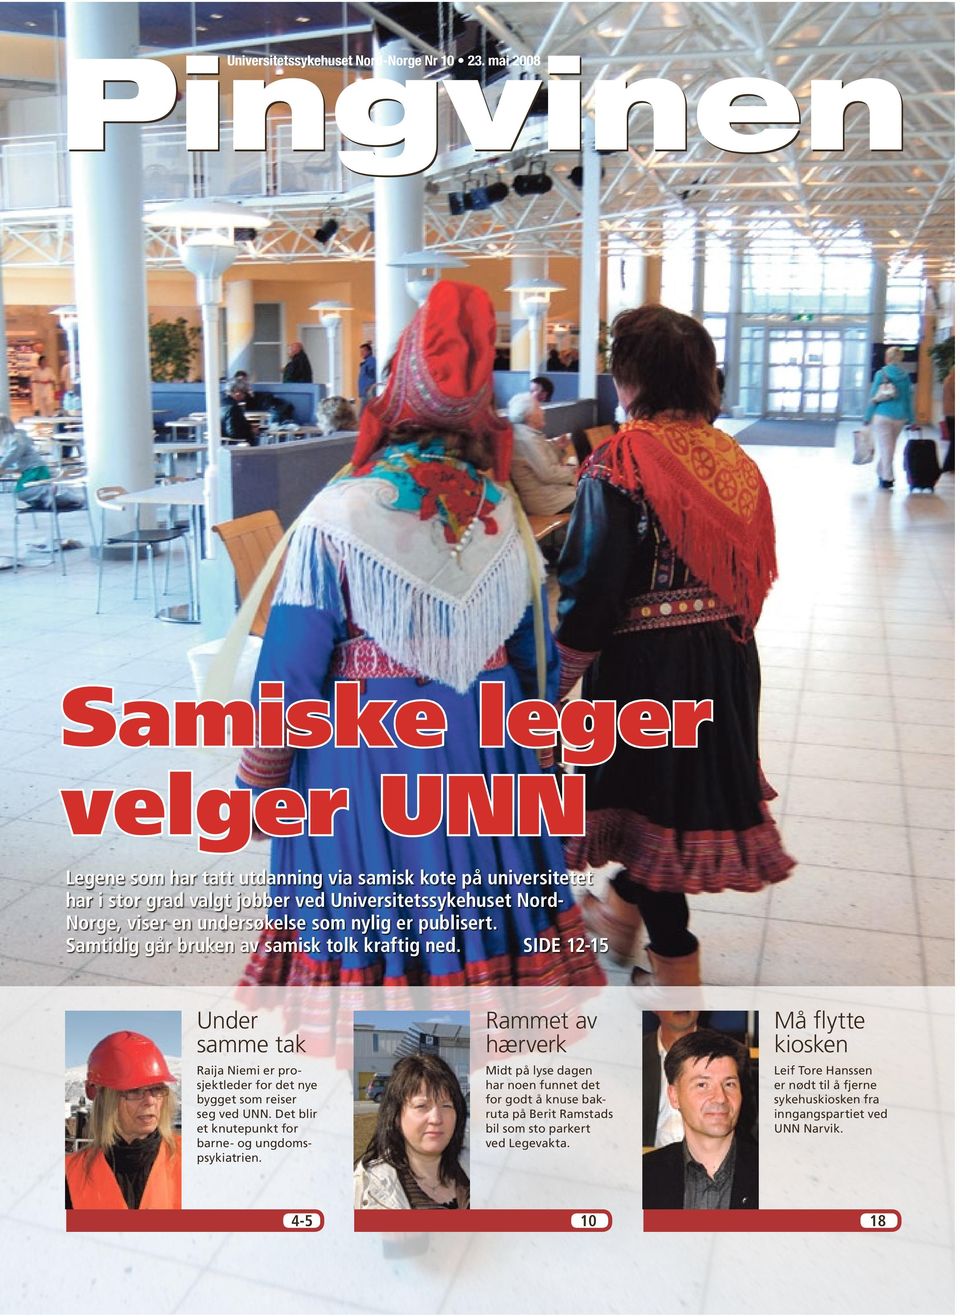 undersøkelse som nylig er publisert. Samtidig går bruken av samisk tolk kraftig ned.